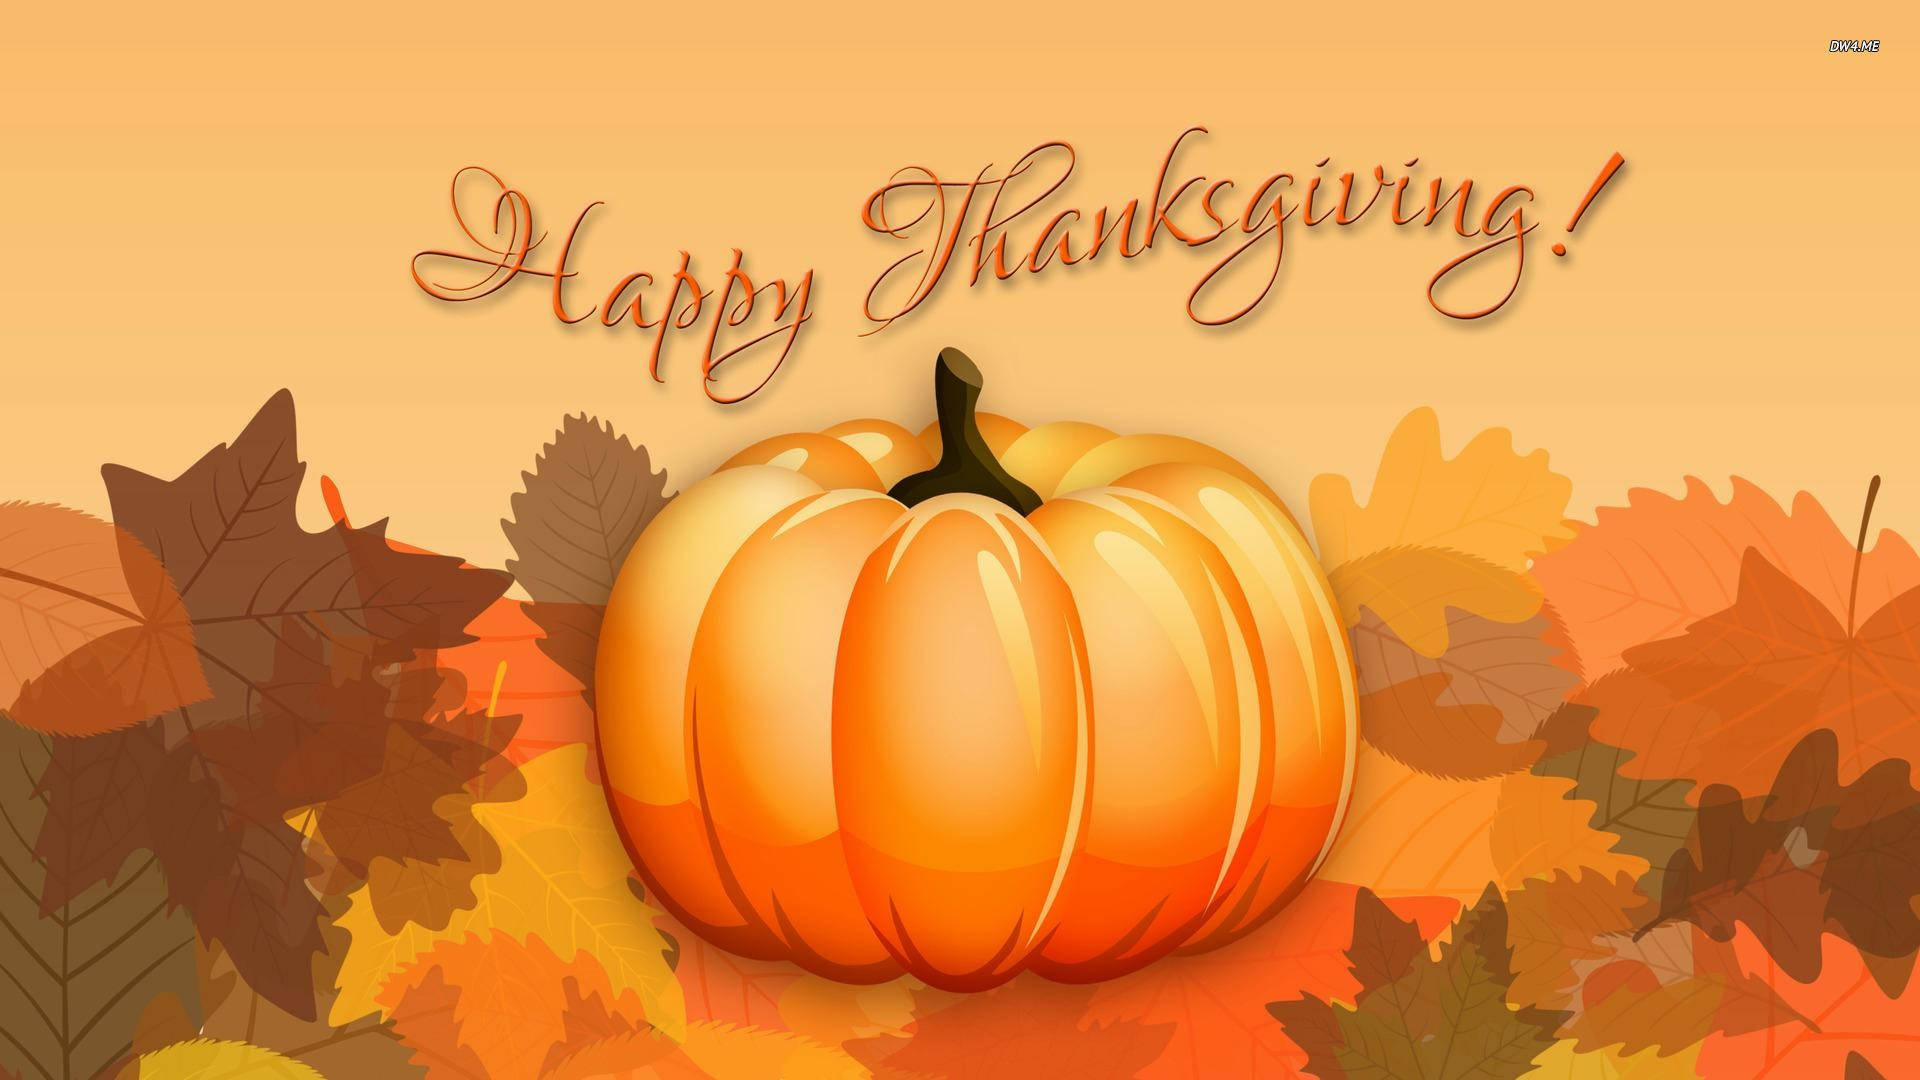 Thanksgiving Day Message Pumpkin Background